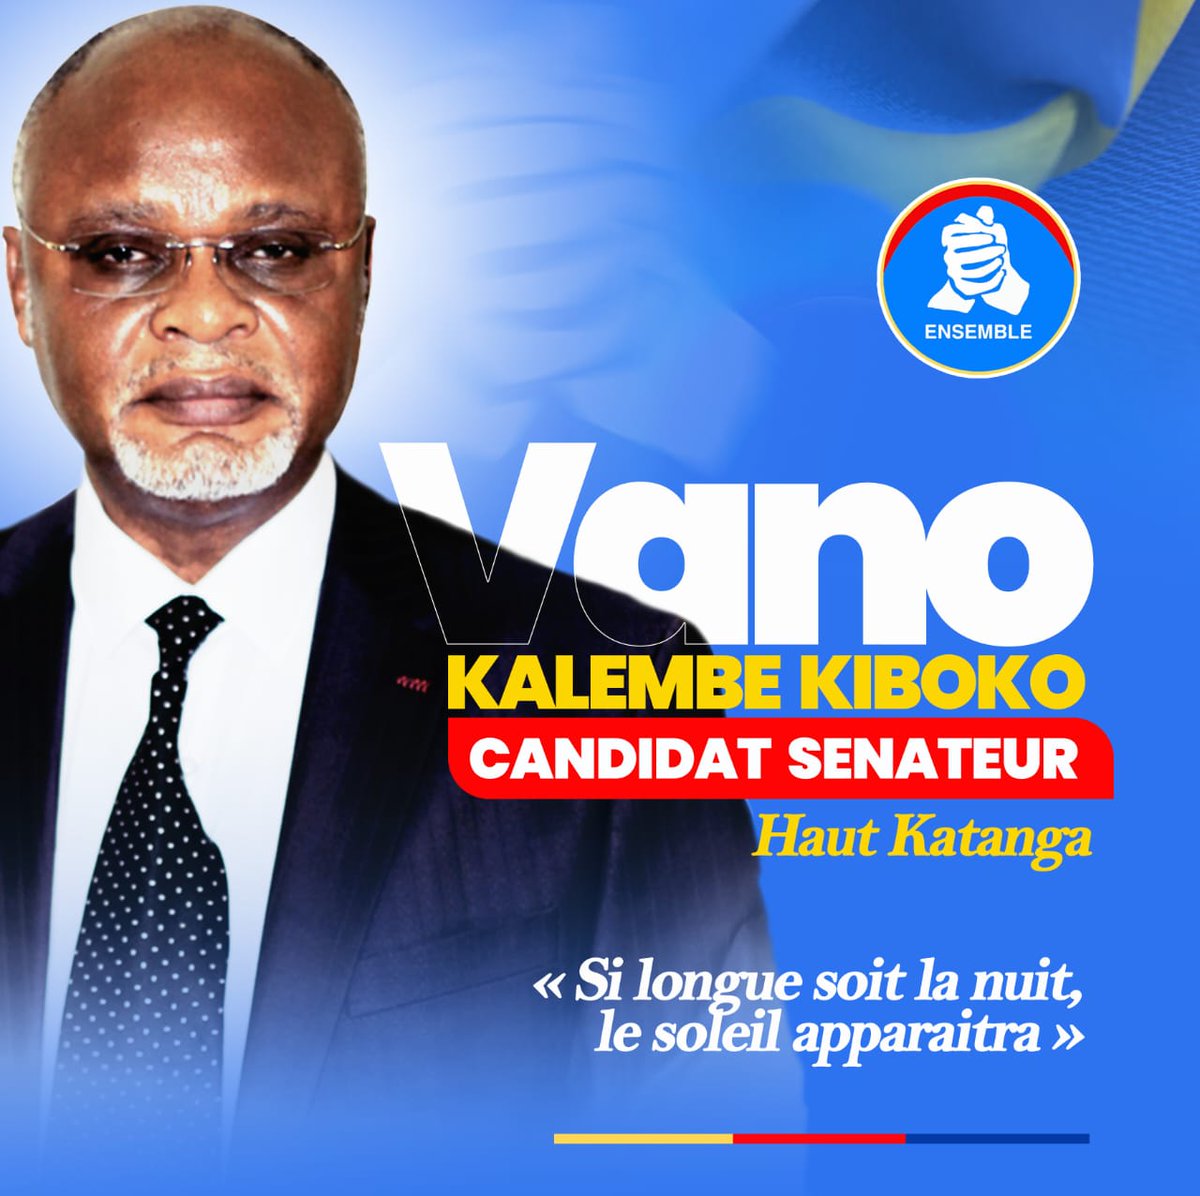 La dynamique Katumbi pour la paix apporte son soutien total à @KibokoVano candidat Sénateur de la province du Haut Katanga.
@moise_katumbi , @mwandochris , @Ensemble_MK